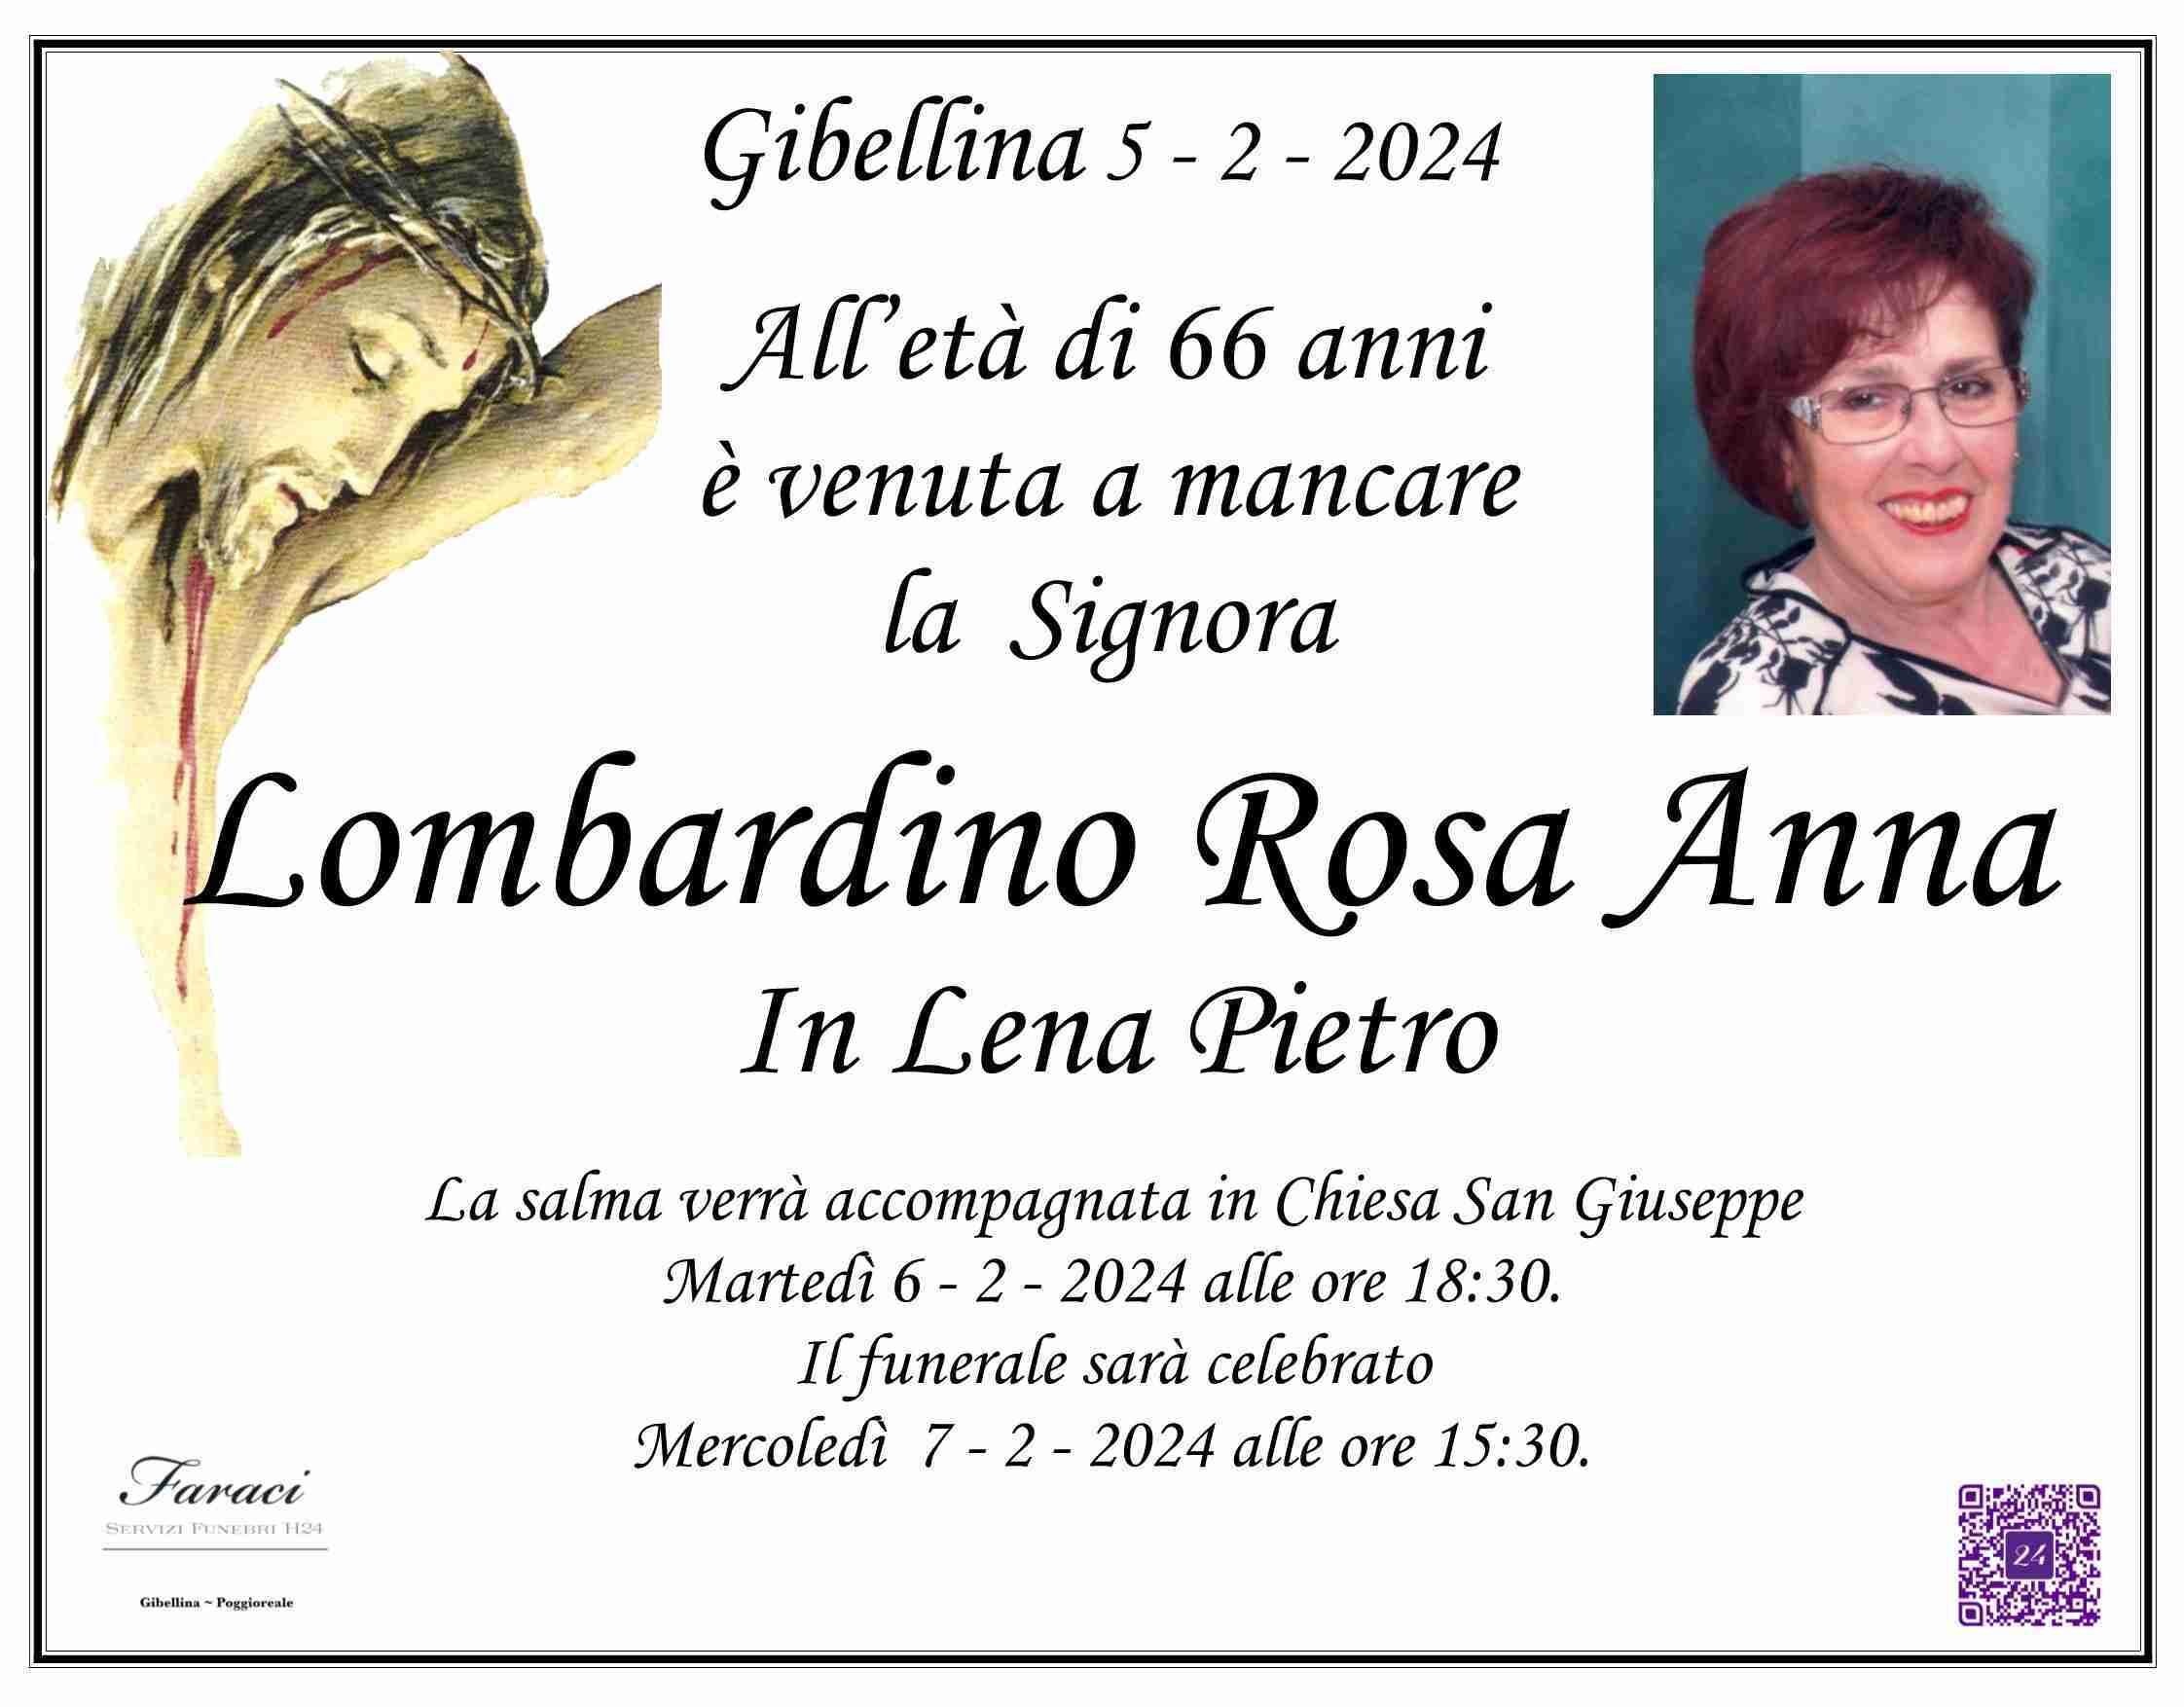 Rosa Anna Lombardino